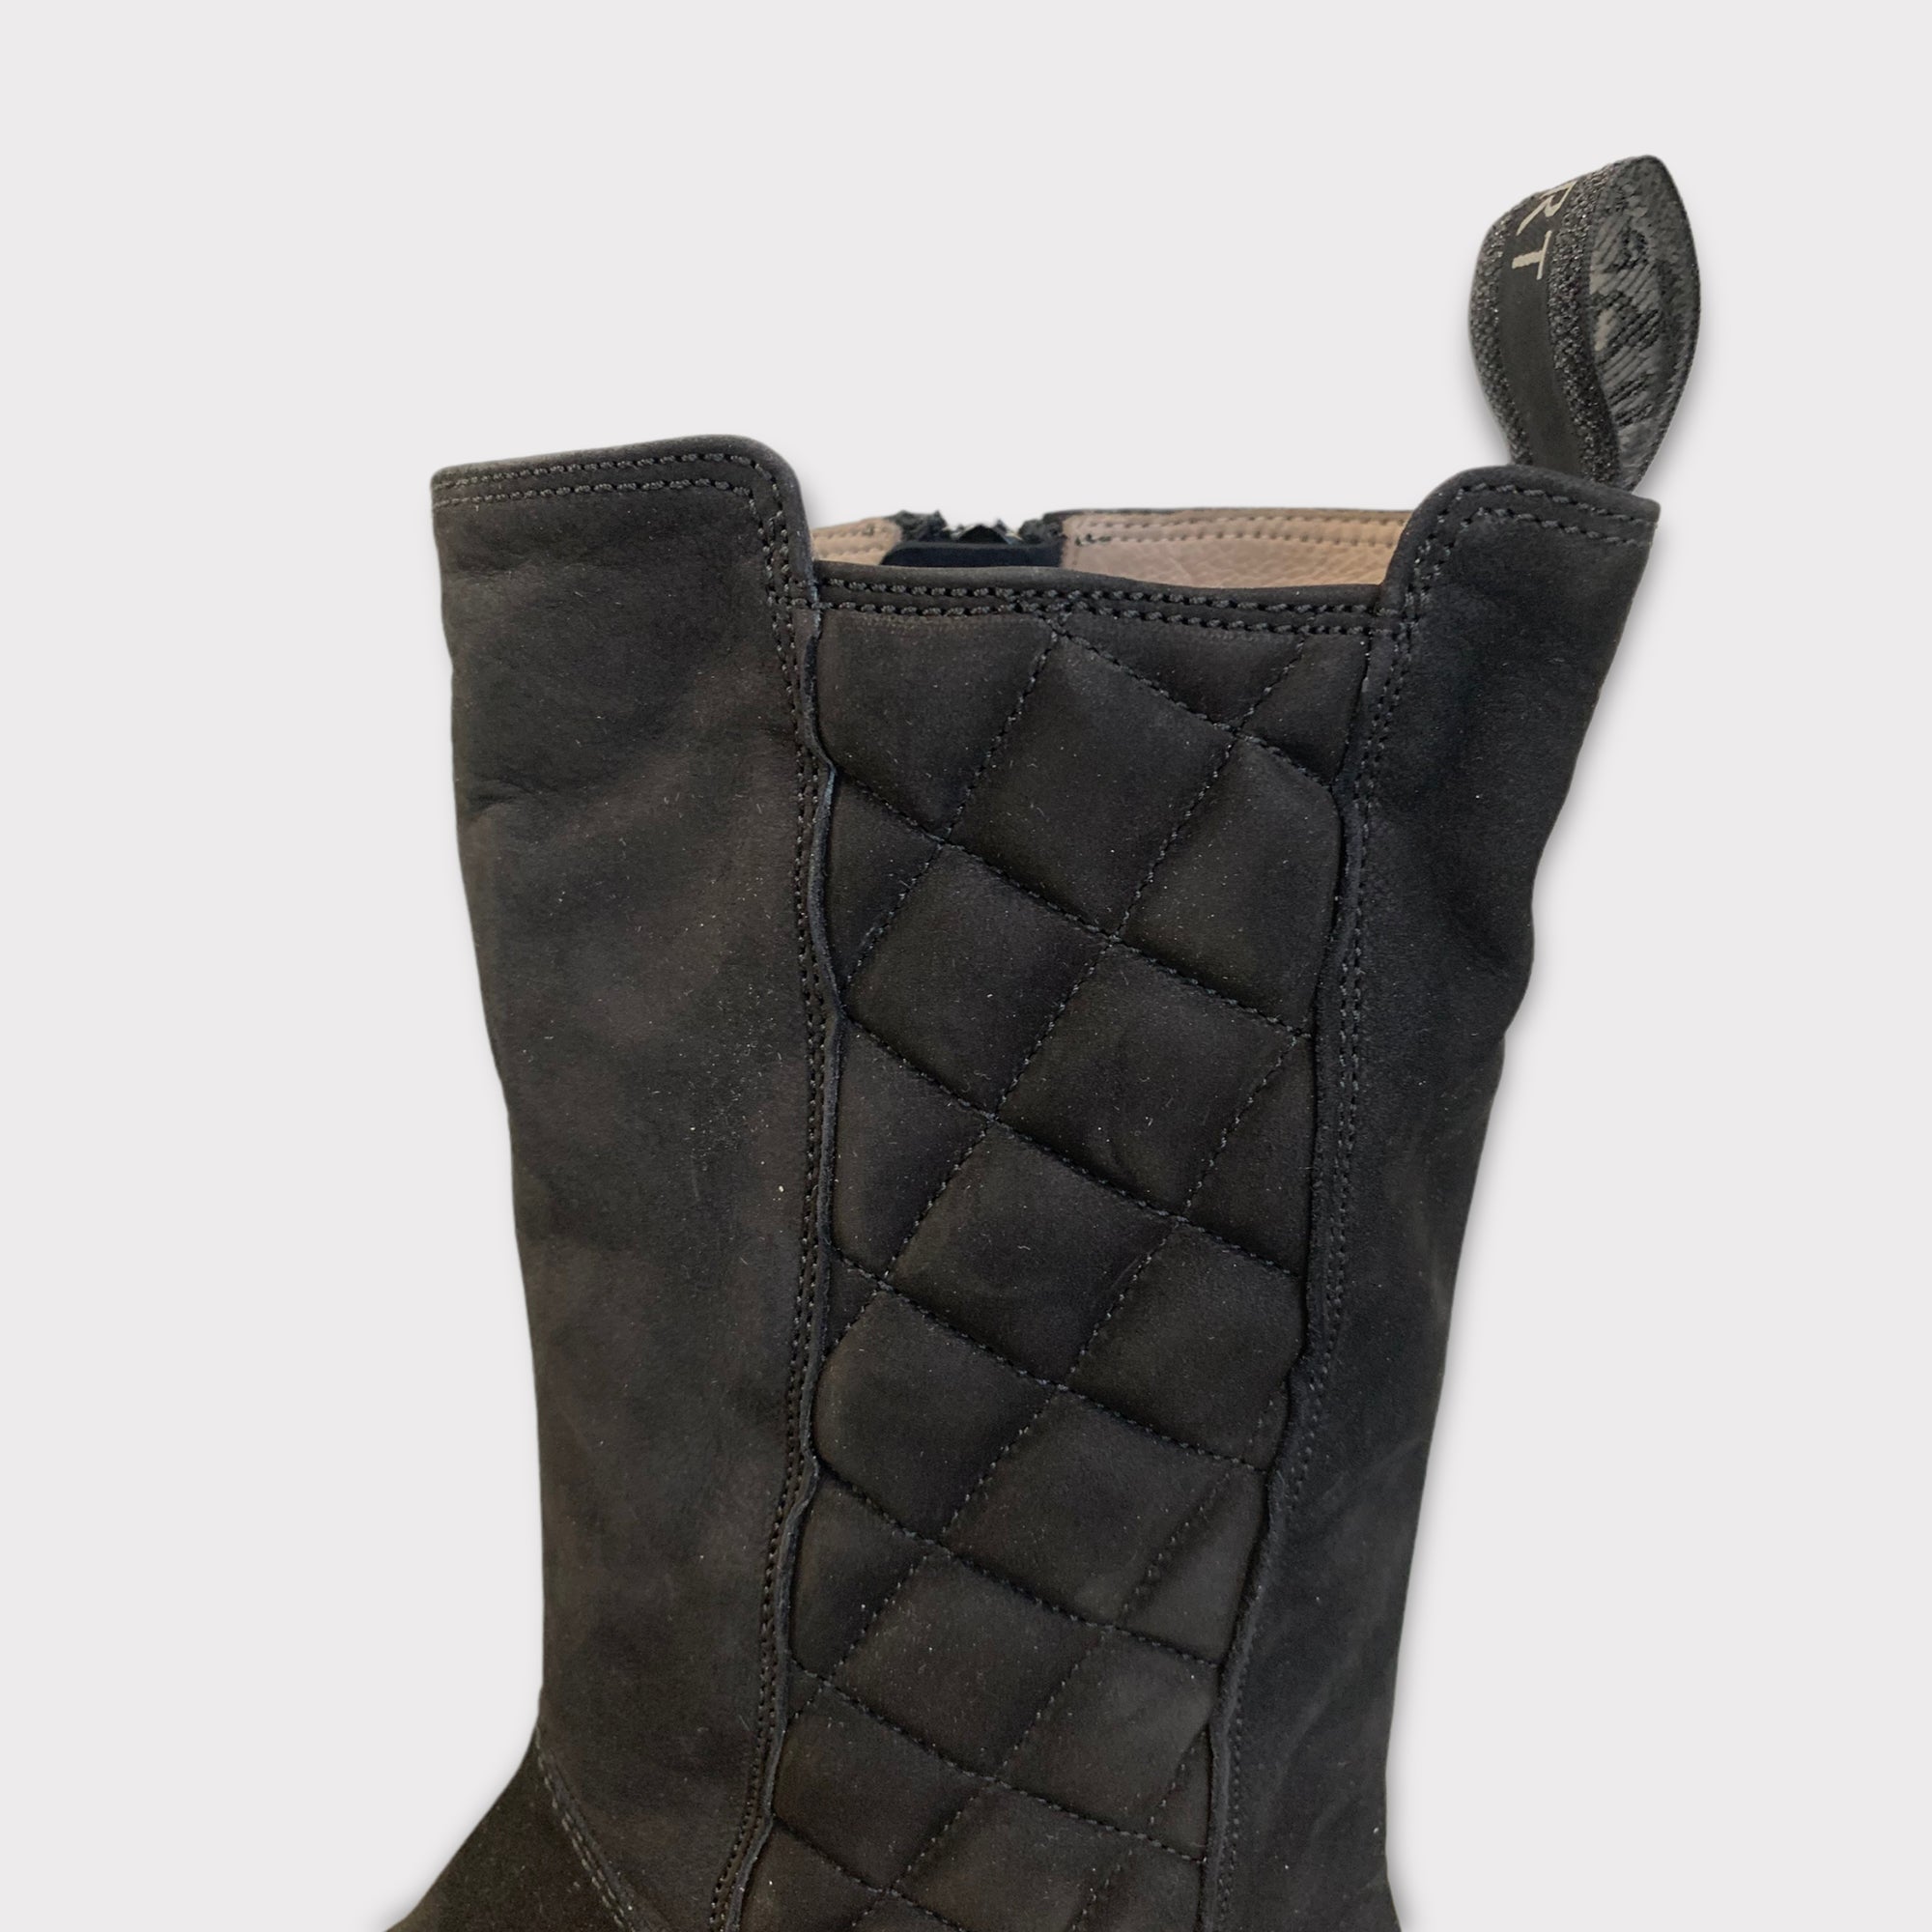 DL Sport Mid-Calf Boots Boots Black